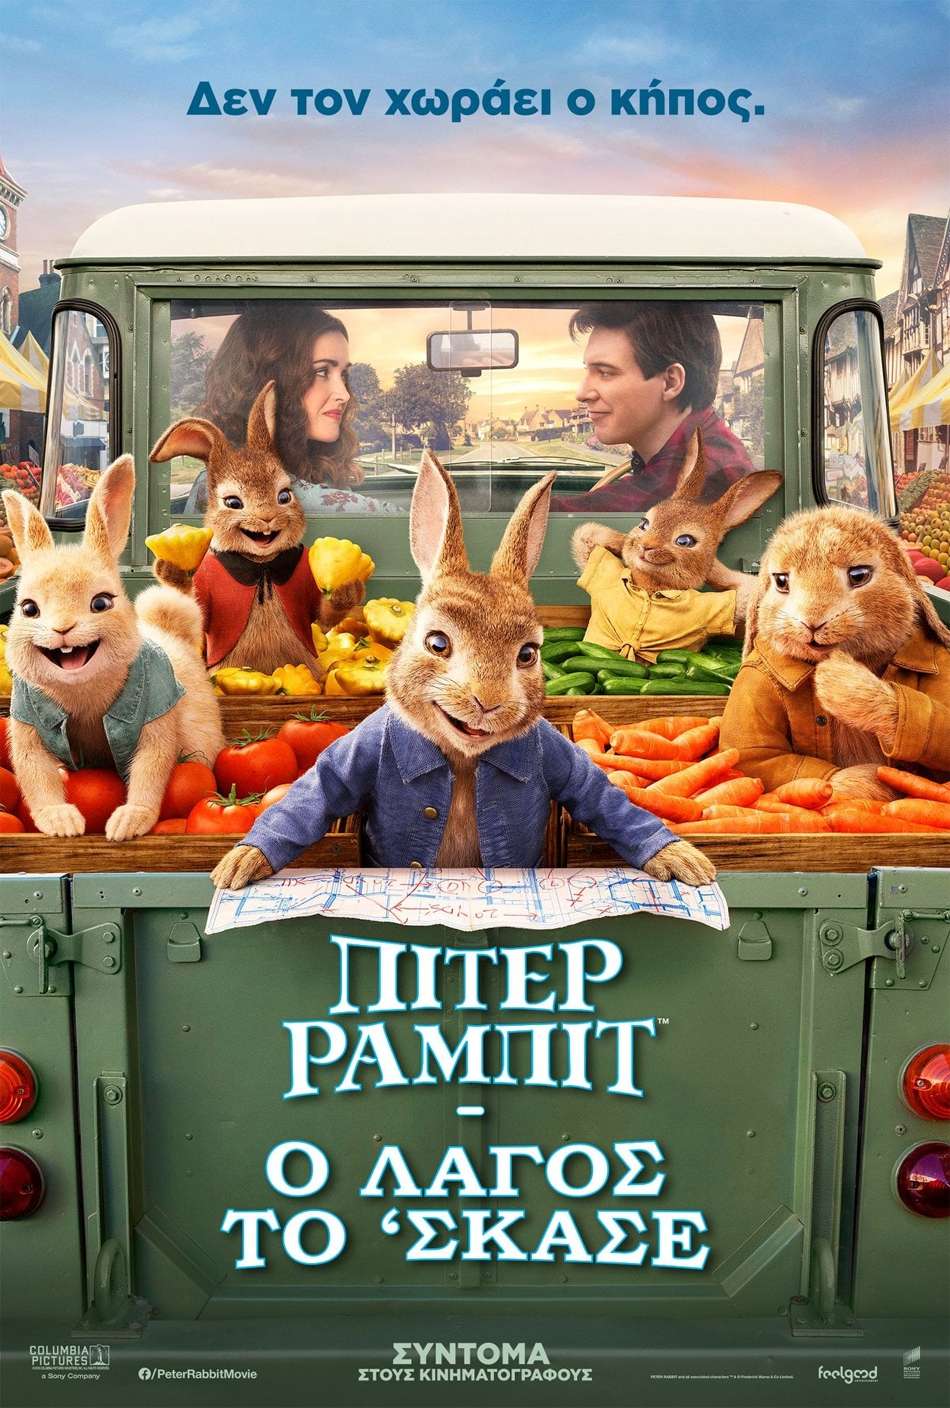 Πίτερ Ράμπιτ: Ο λαγός το ΄σκασε (Peter Rabbit 2: The Runaway) Poster Πόστερ